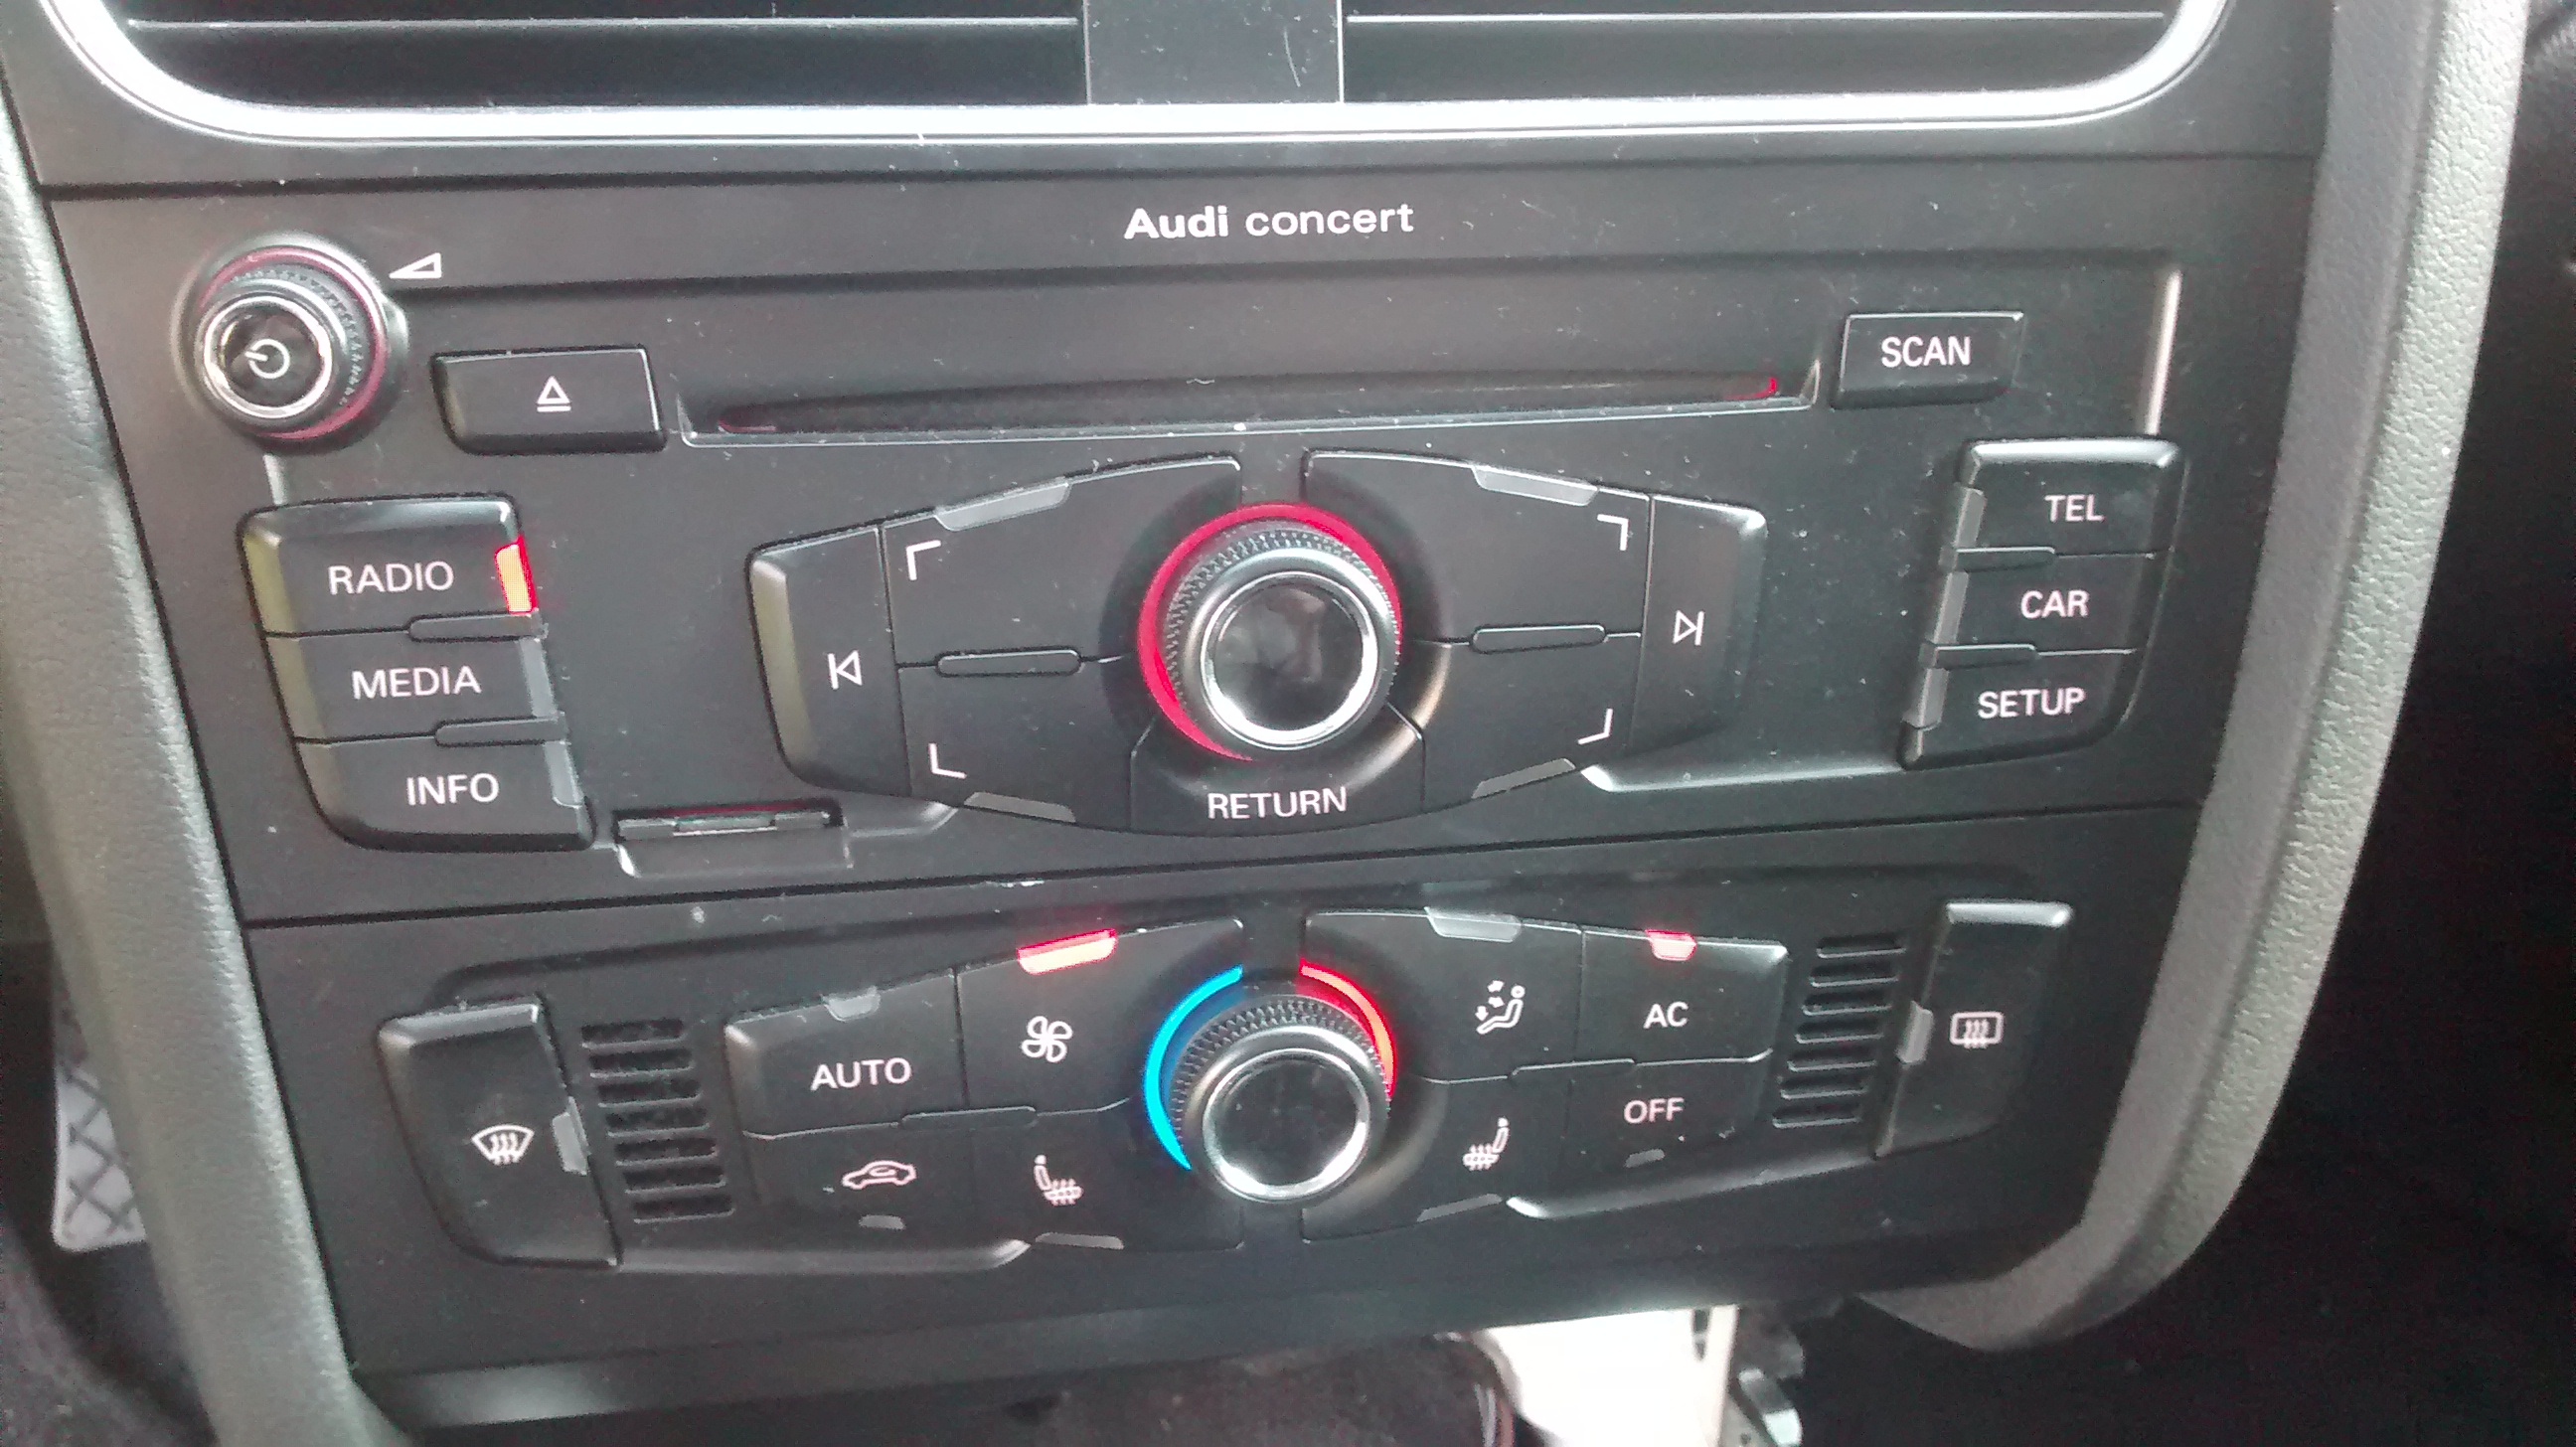 Audi a4 b8 stereo options